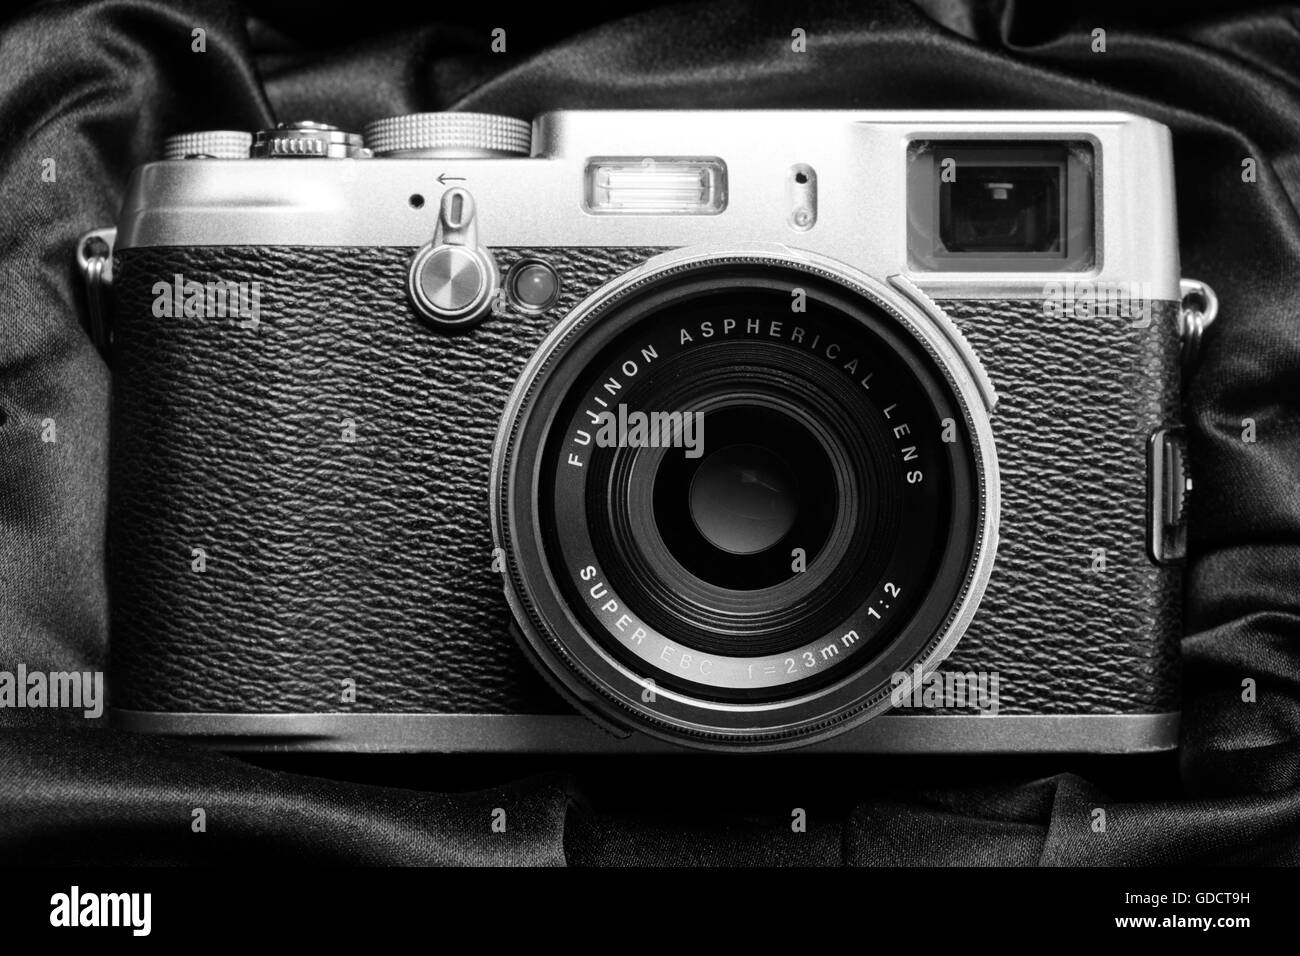 Fuji X100 digital telecamera con obiettivo fisso Foto Stock